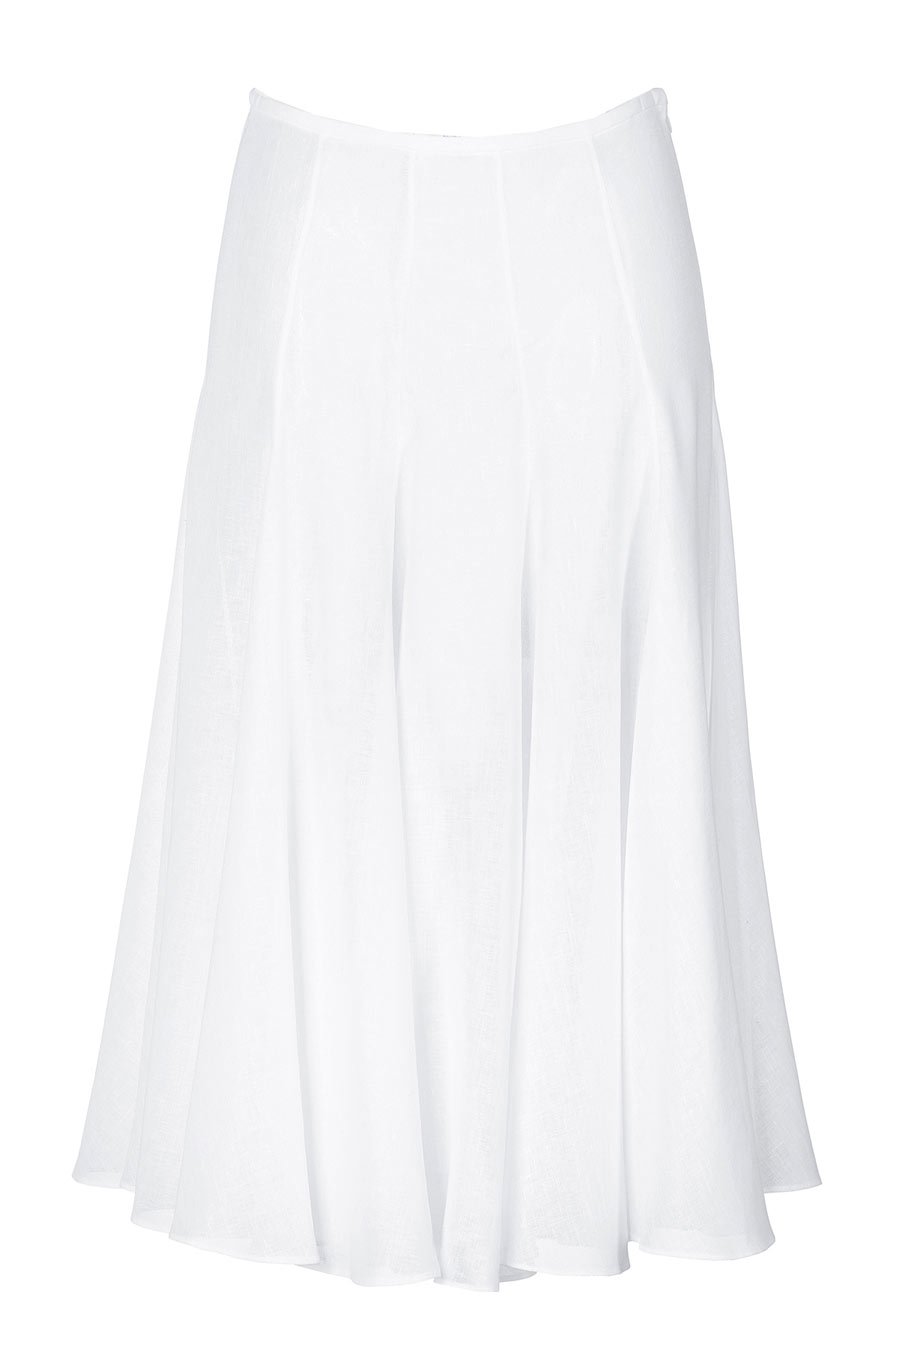 Long White Flared Bridal Satin Skirt | Elizabeth's Custom Skirts